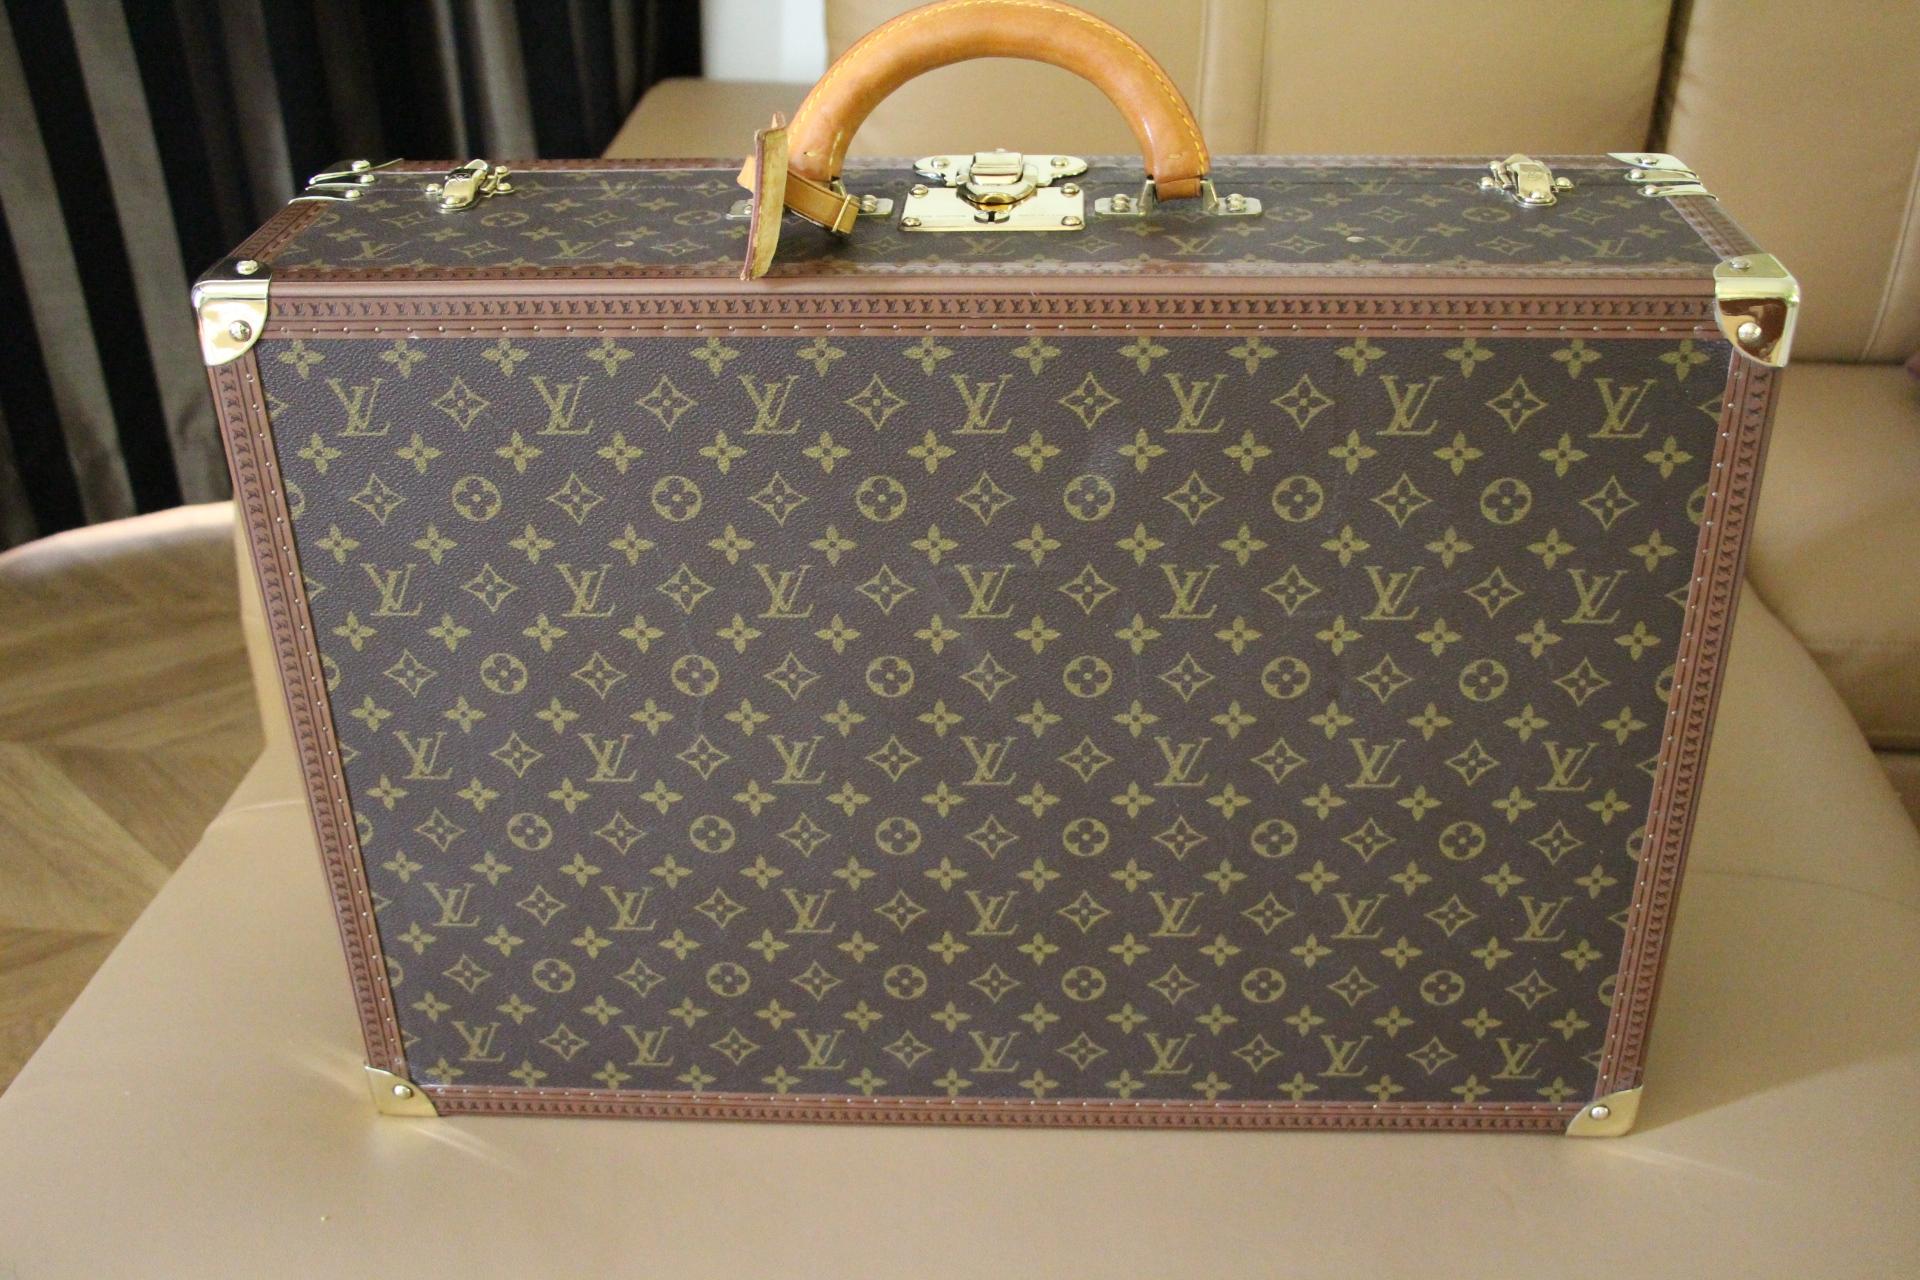  Louis Vuitton Suitcase 60 cm,  Louis Vuitton Trunk, Vuitton 60 Suitcase 6